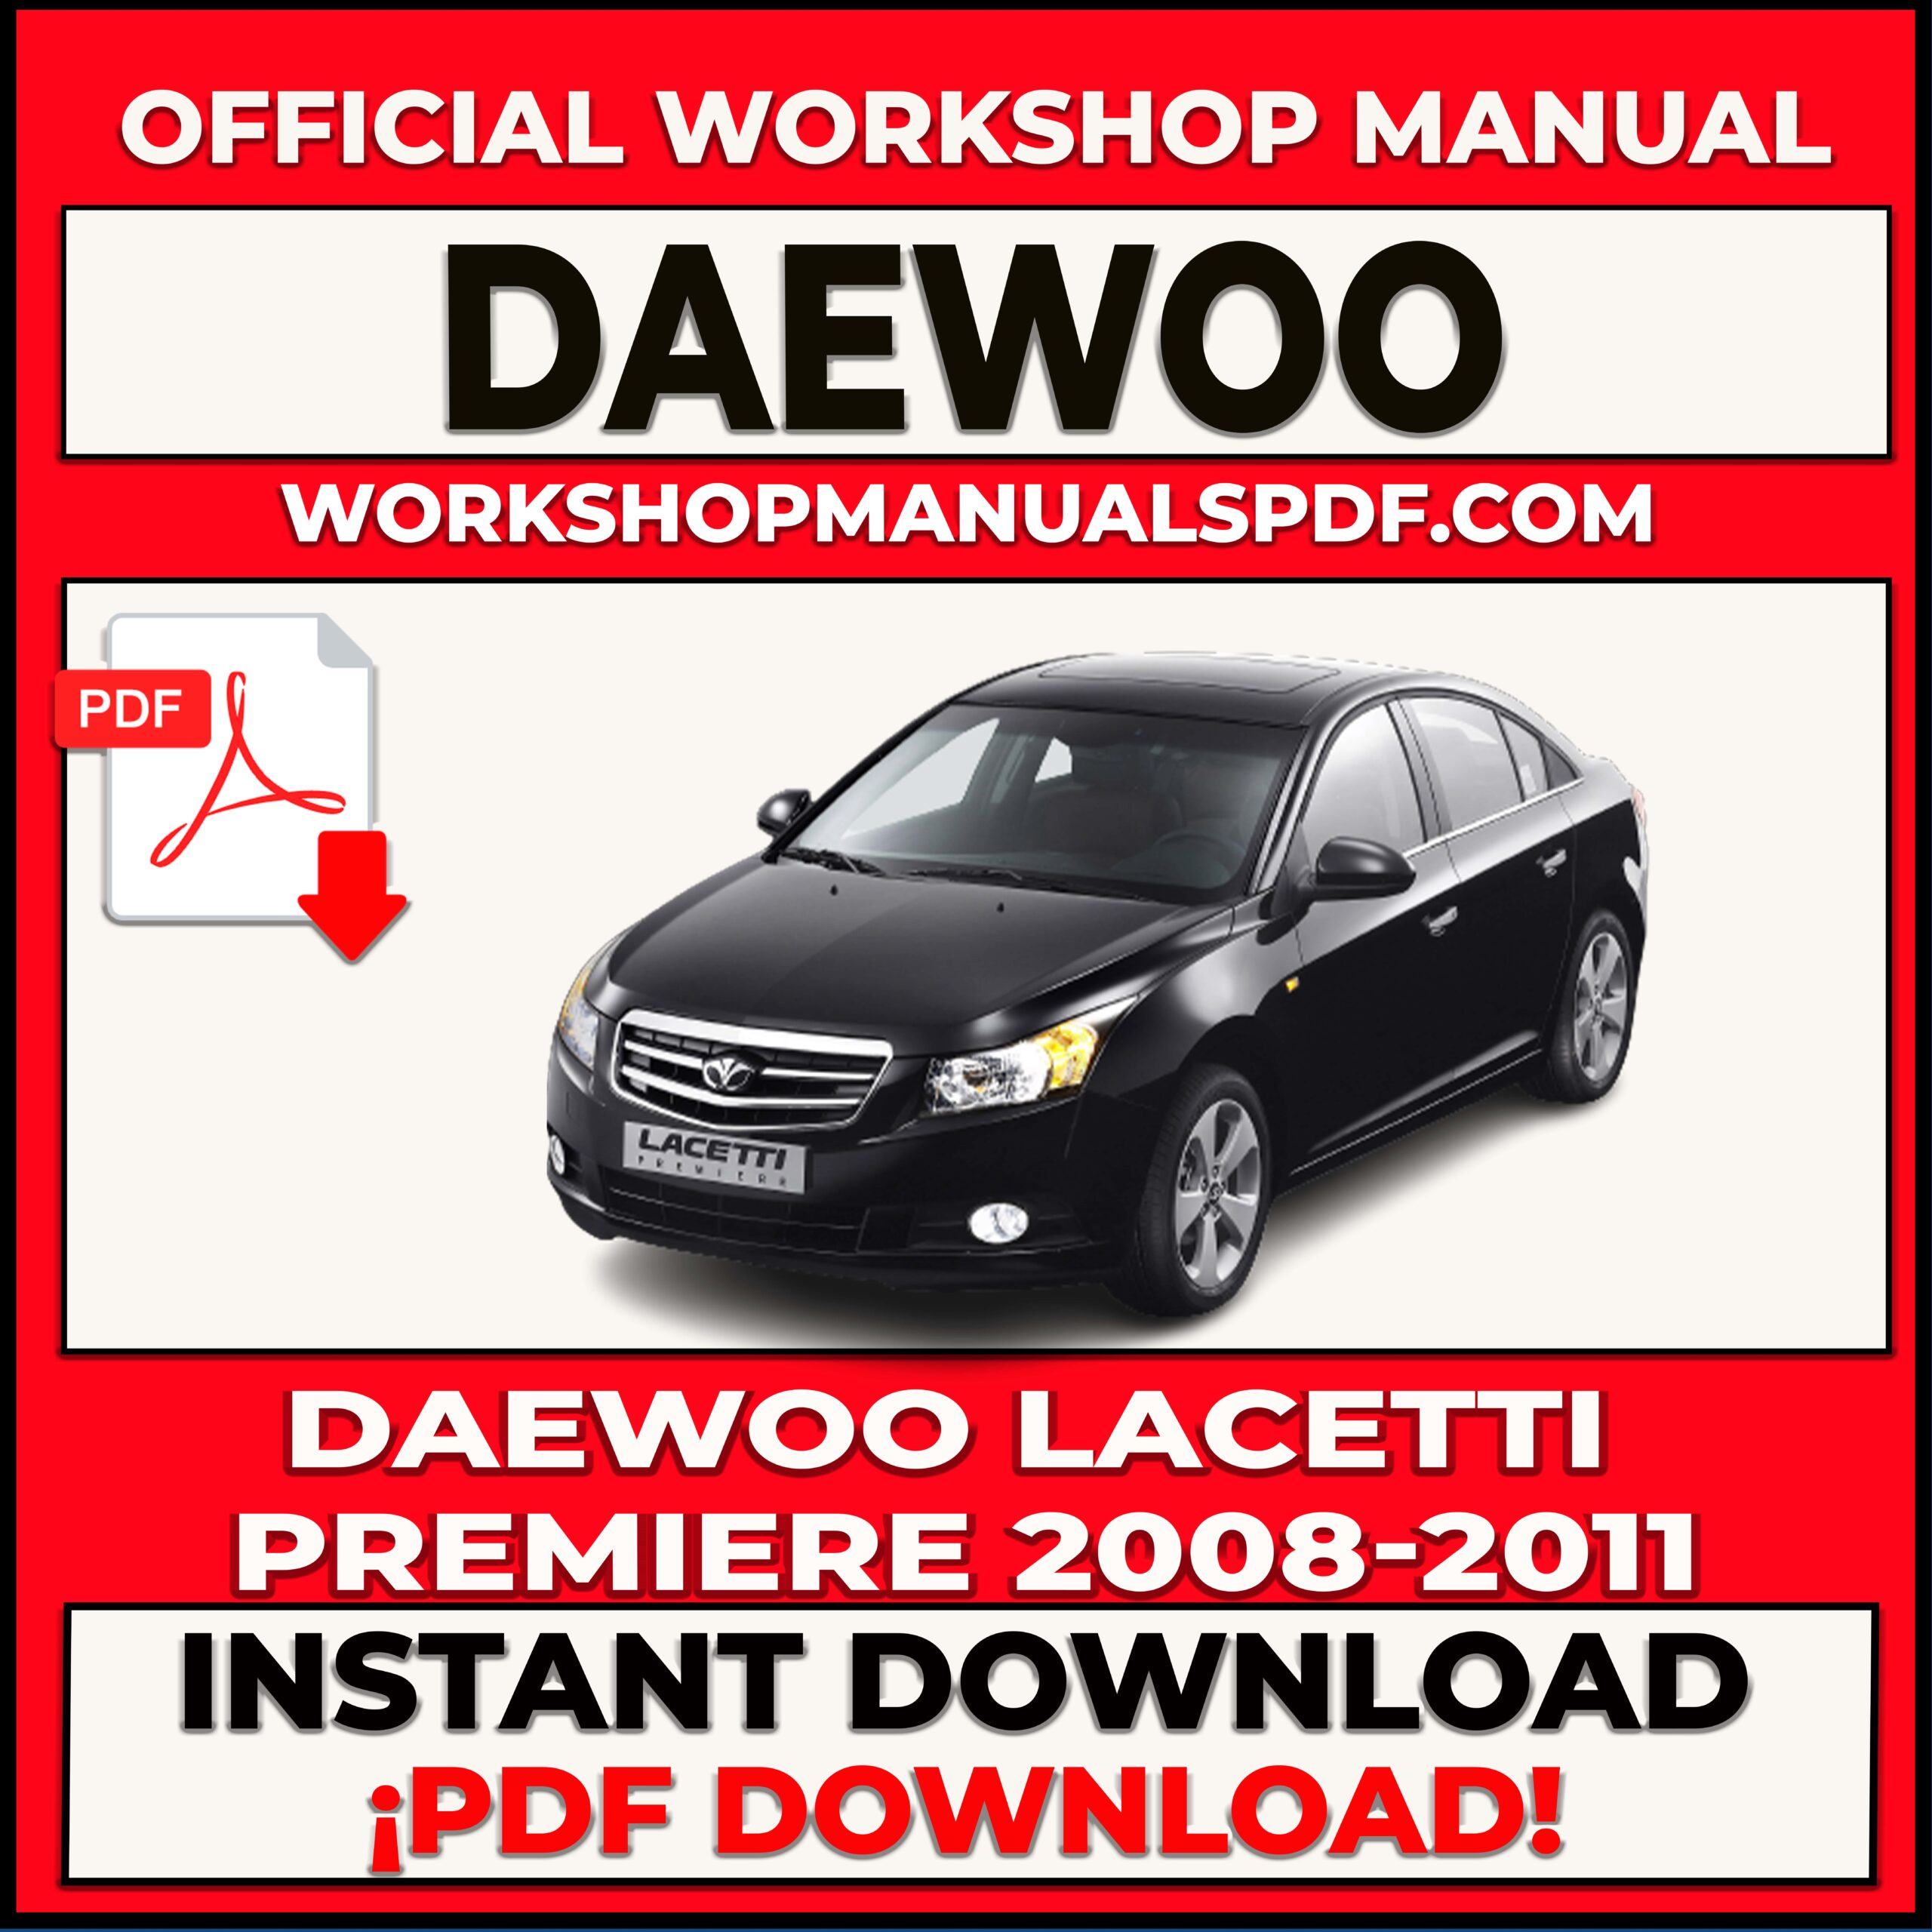 Daewoo Lacetti Premiere 2008-2011 Workshop Repair Manual